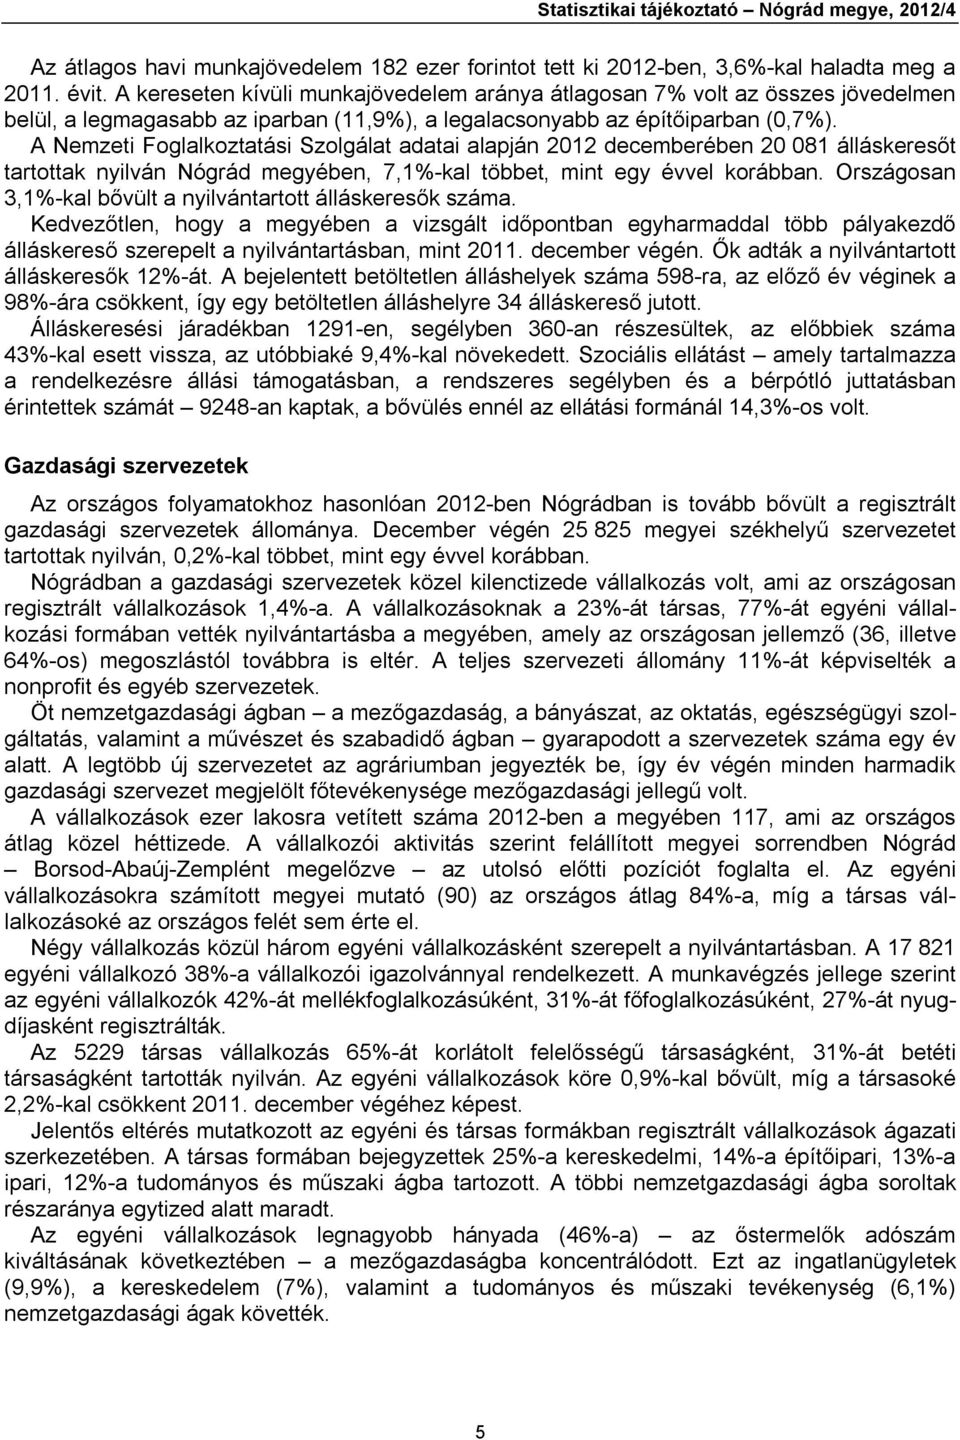 A Nemzeti Foglalkoztatási Szolgálat adatai alapján 2012 decemberében 20 081 álláskeresőt tartottak nyilván Nógrád megyében, 7,1%-kal többet, mint egy évvel korábban.